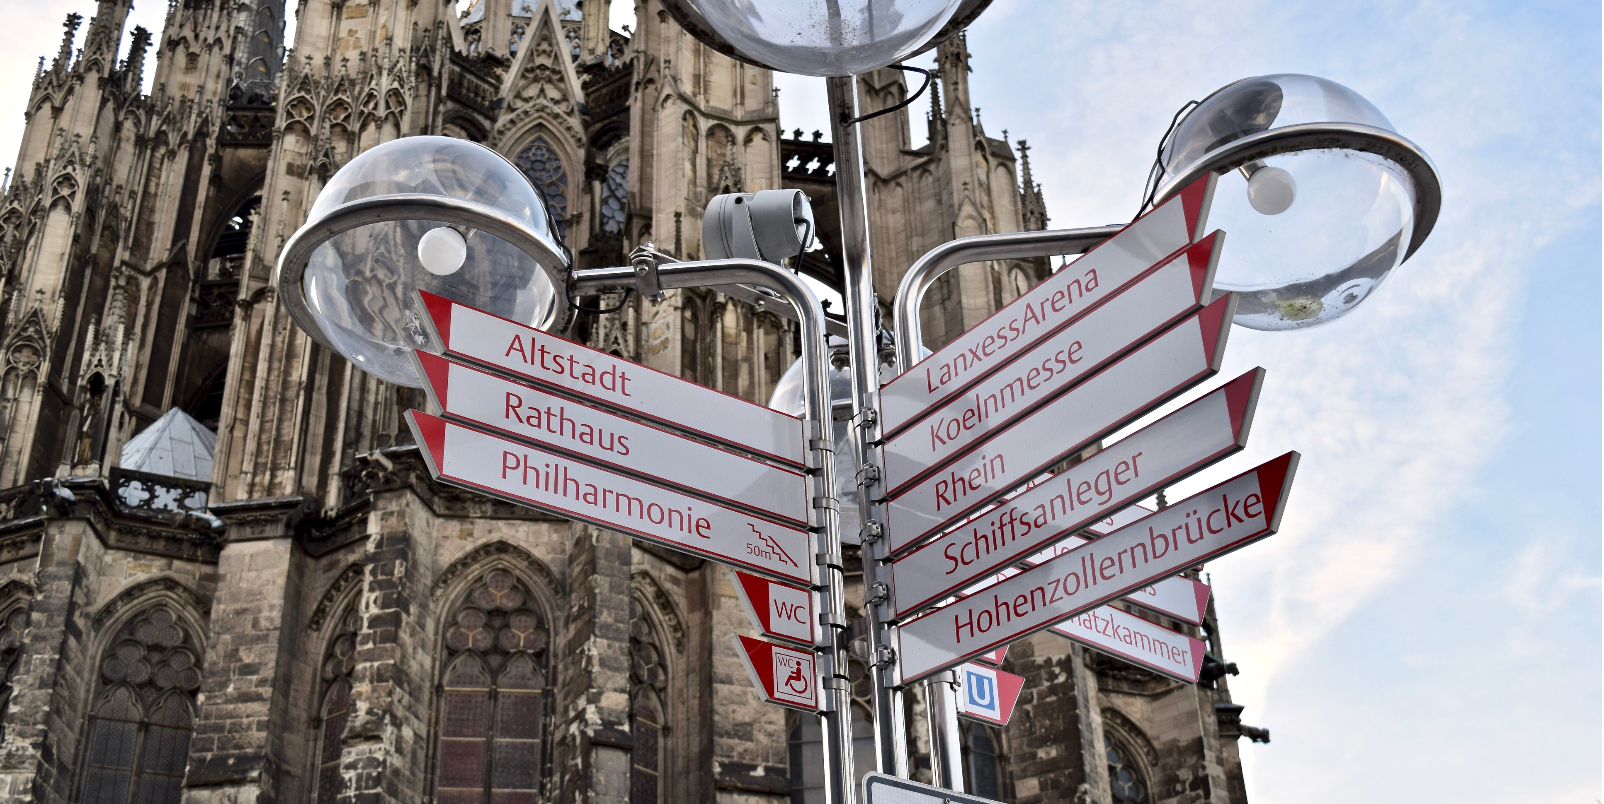 Cologne panneaux